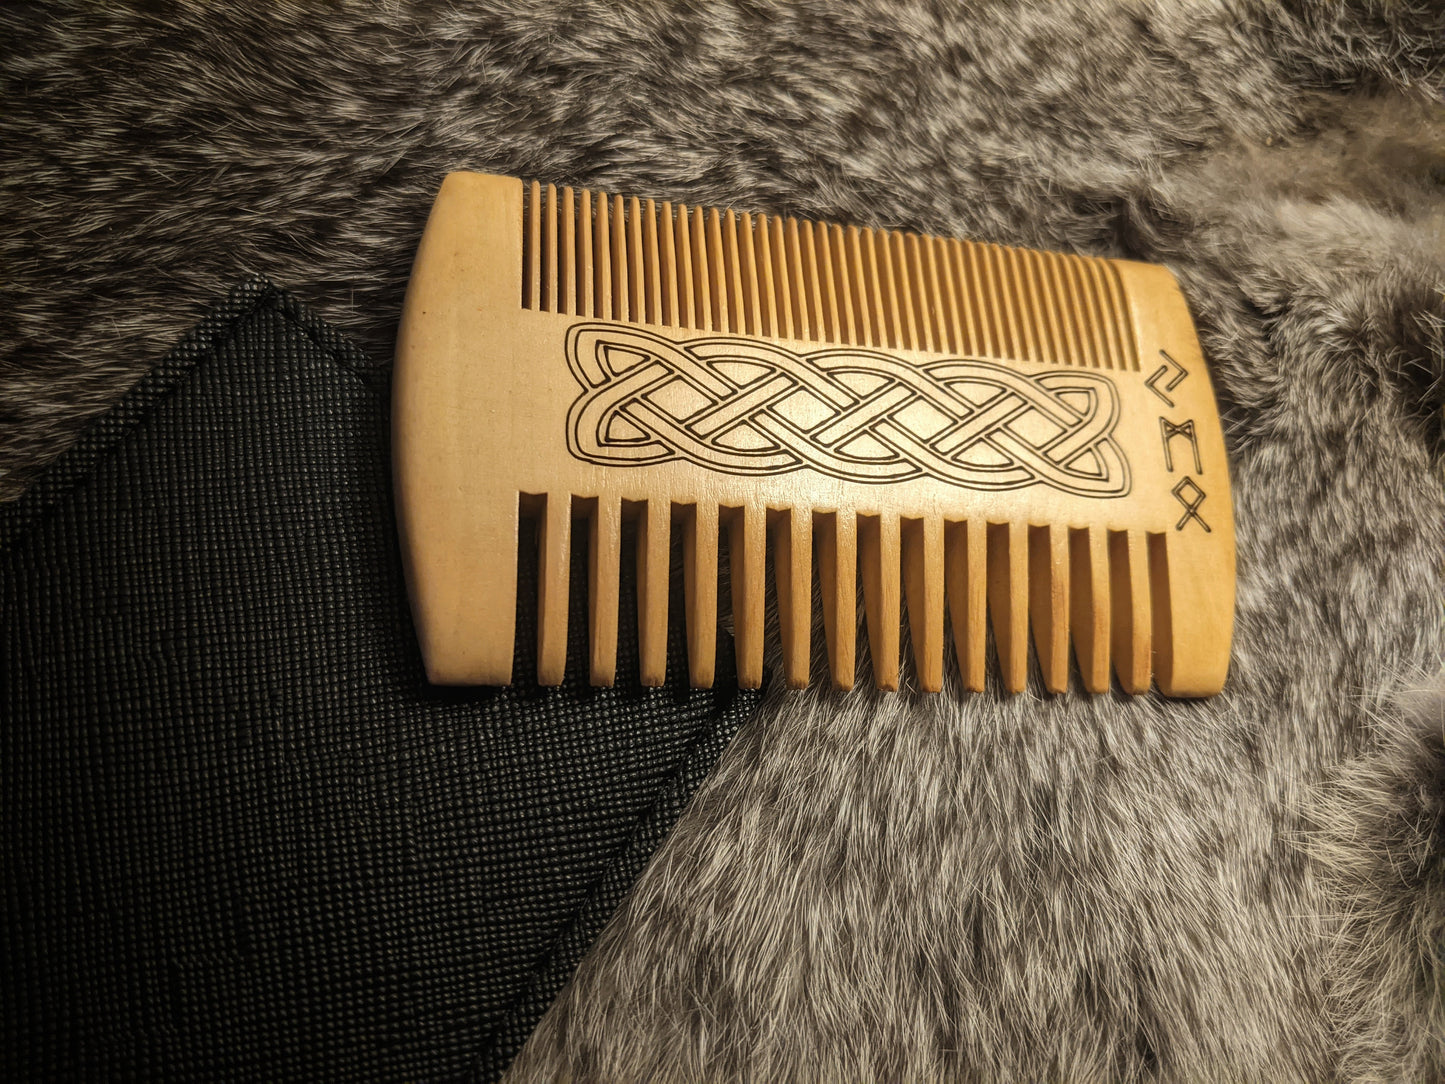 Custom Rune Initials Sandalwood Beard Comb Viking Knotwork